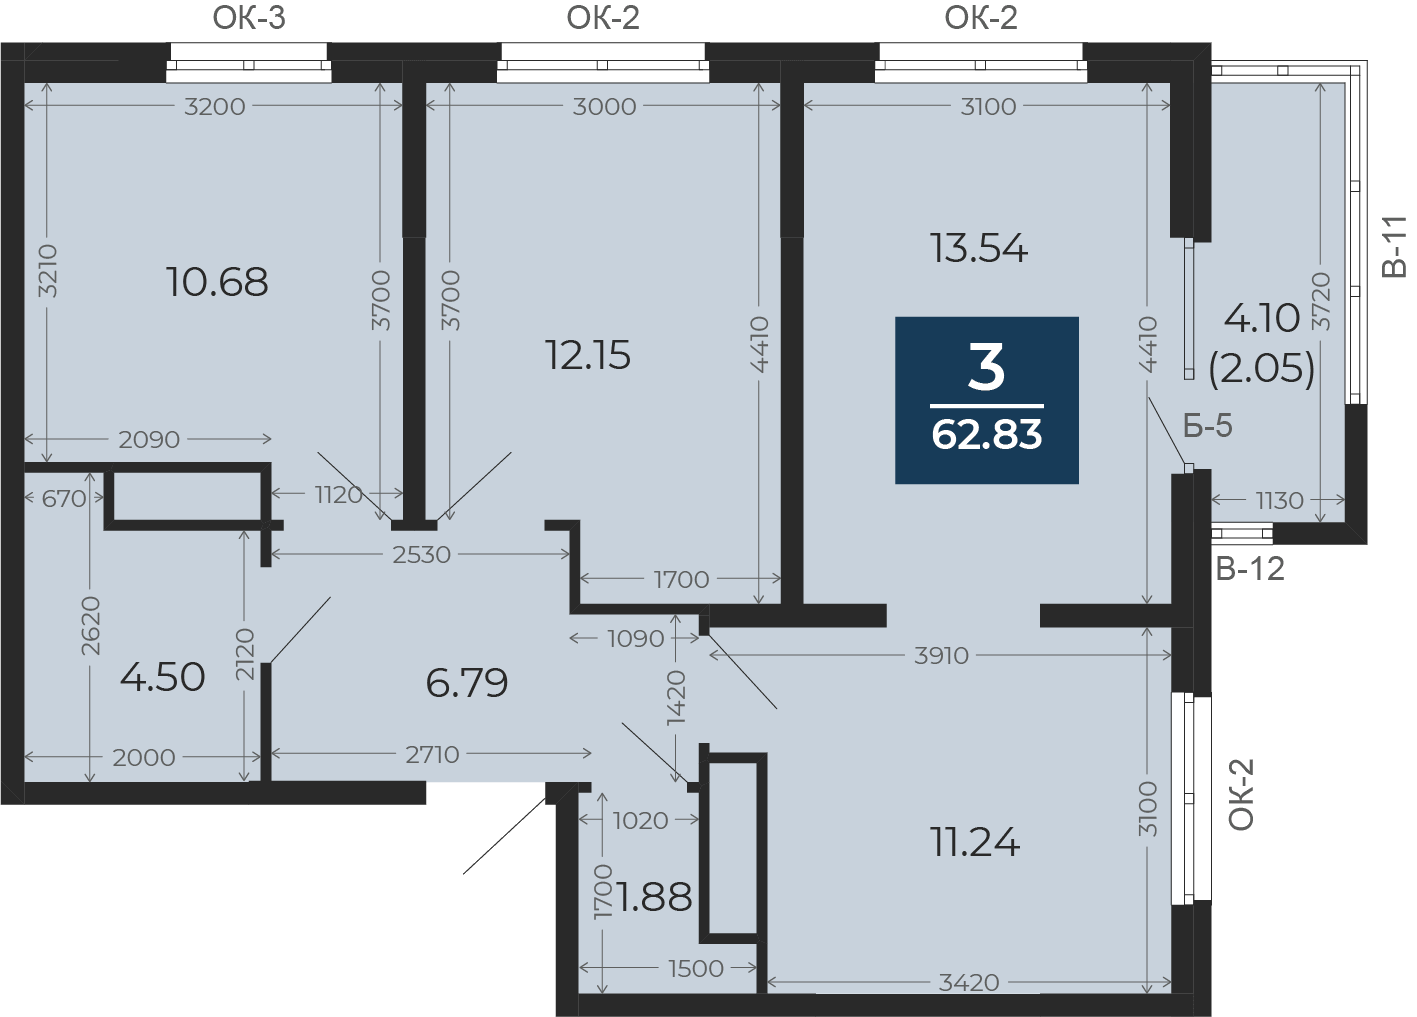 Квартира № 105, 3-комнатная, 62.83 кв. м, 16 этаж